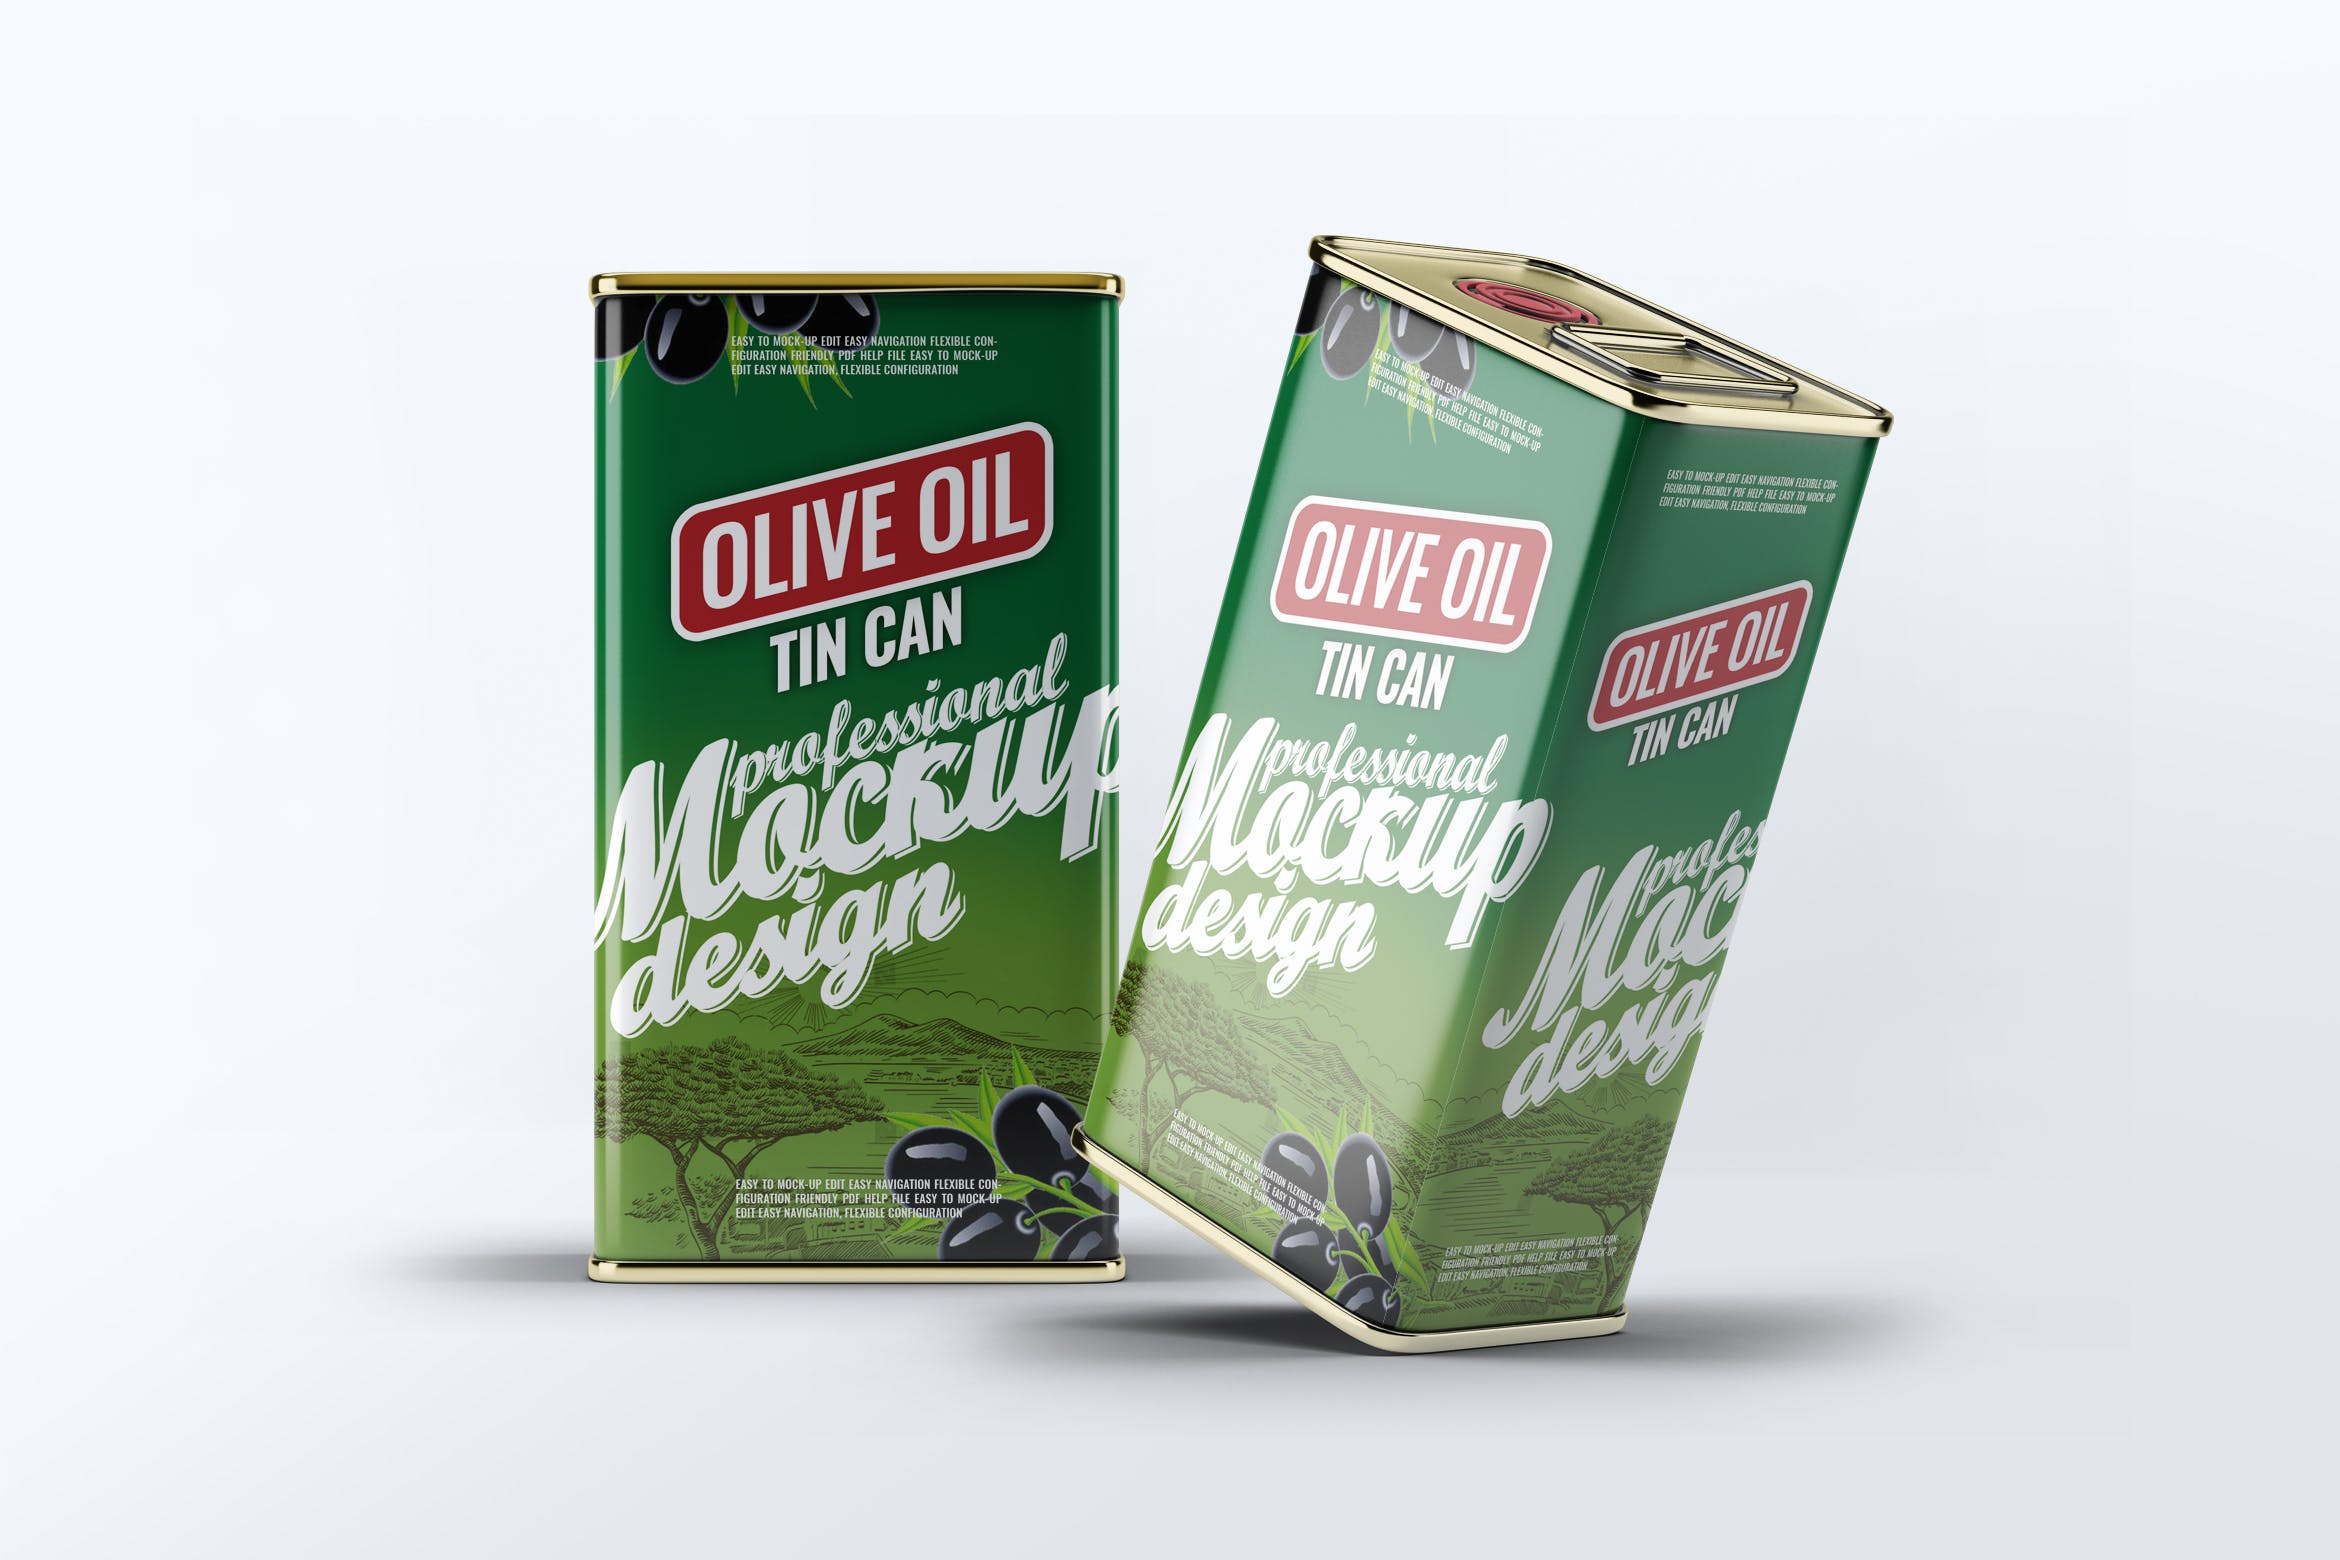 橄榄油罐头包装外观设计效果图素材库精选模板 Tin Can Olive Oil Mock-Up插图